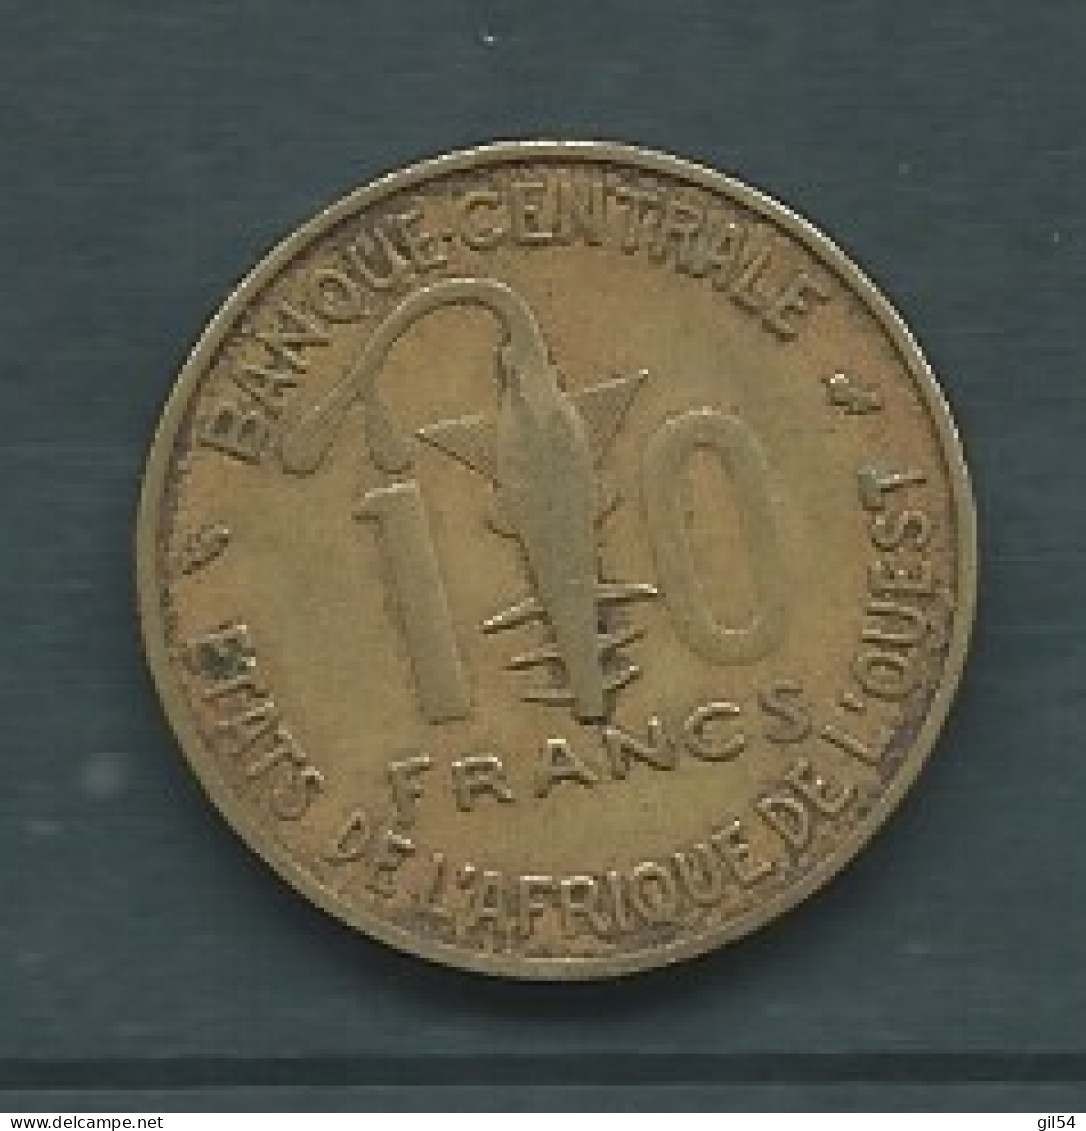 Afrique De L'Ouest - 10 Francs 1970  Pieb 25206 - Andere - Afrika